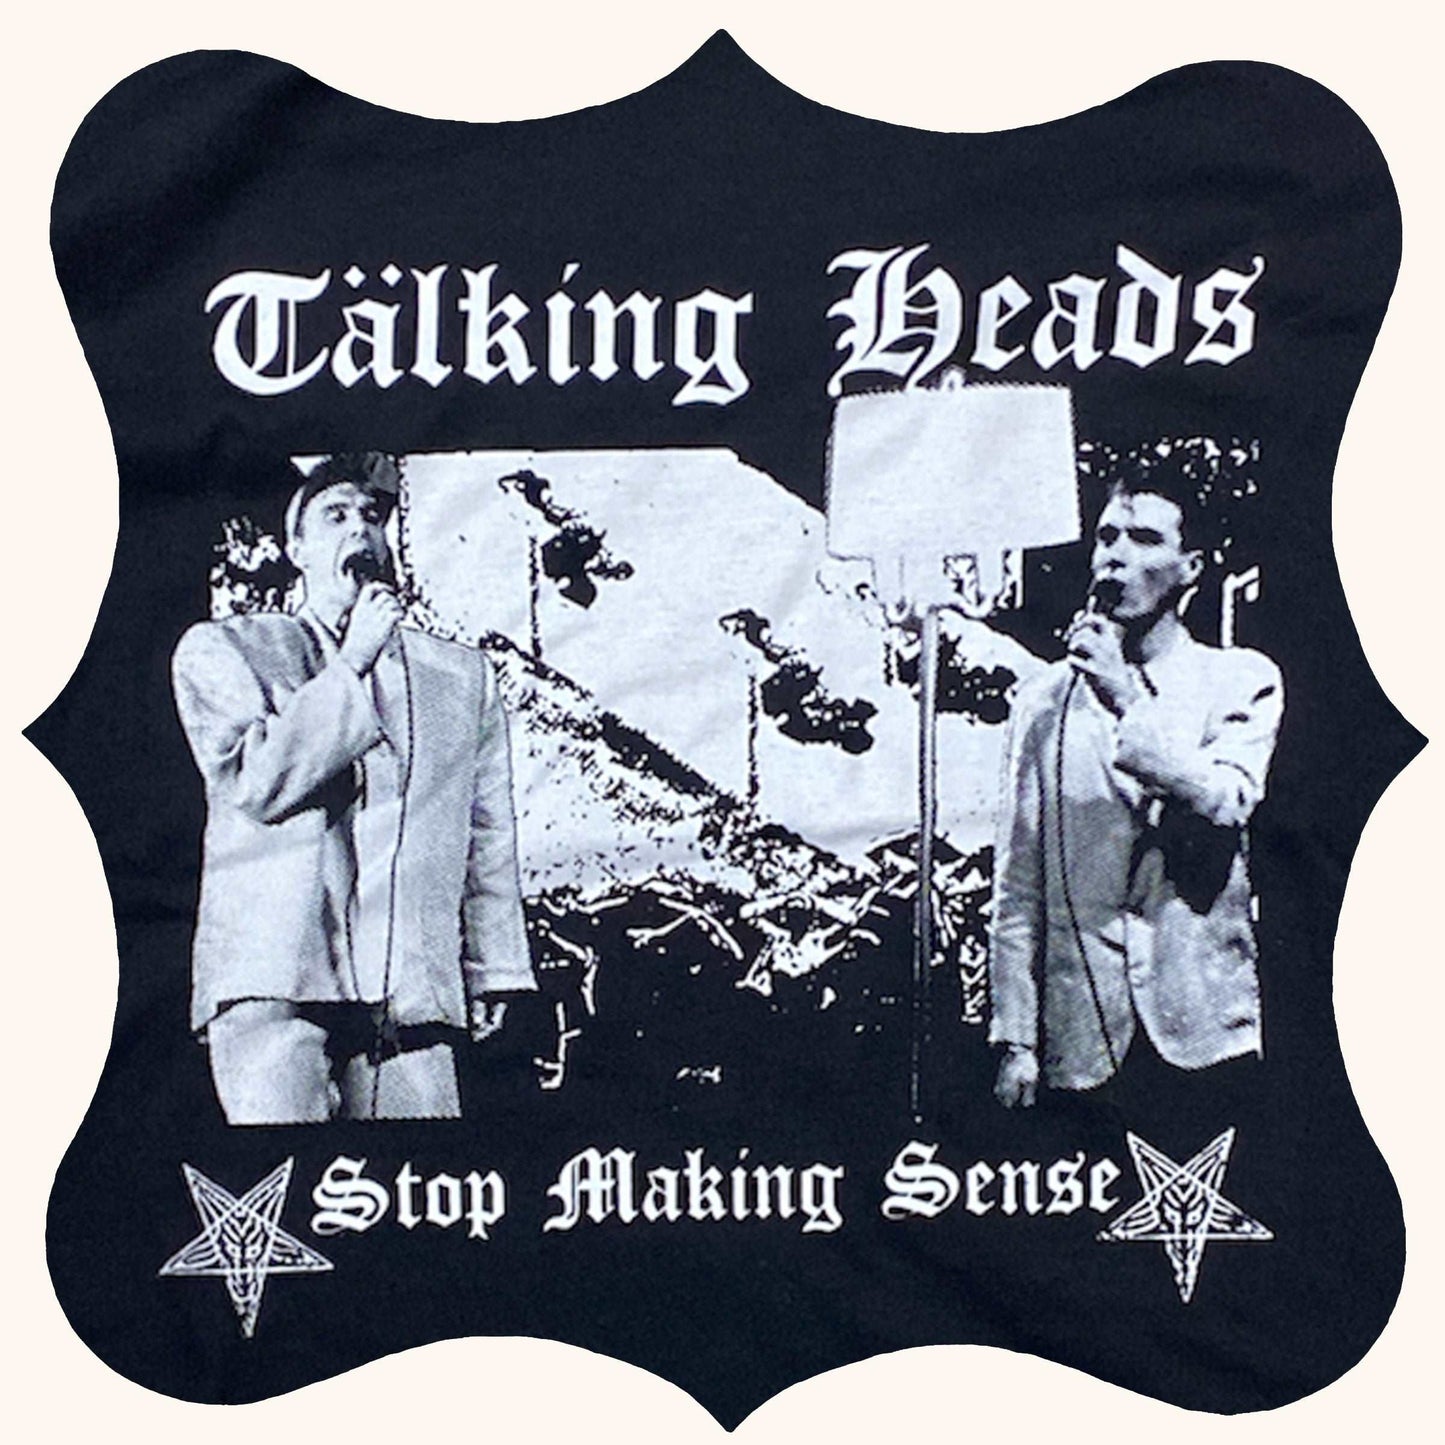 Talking Heads // Leftover Crack Punk T-shirt